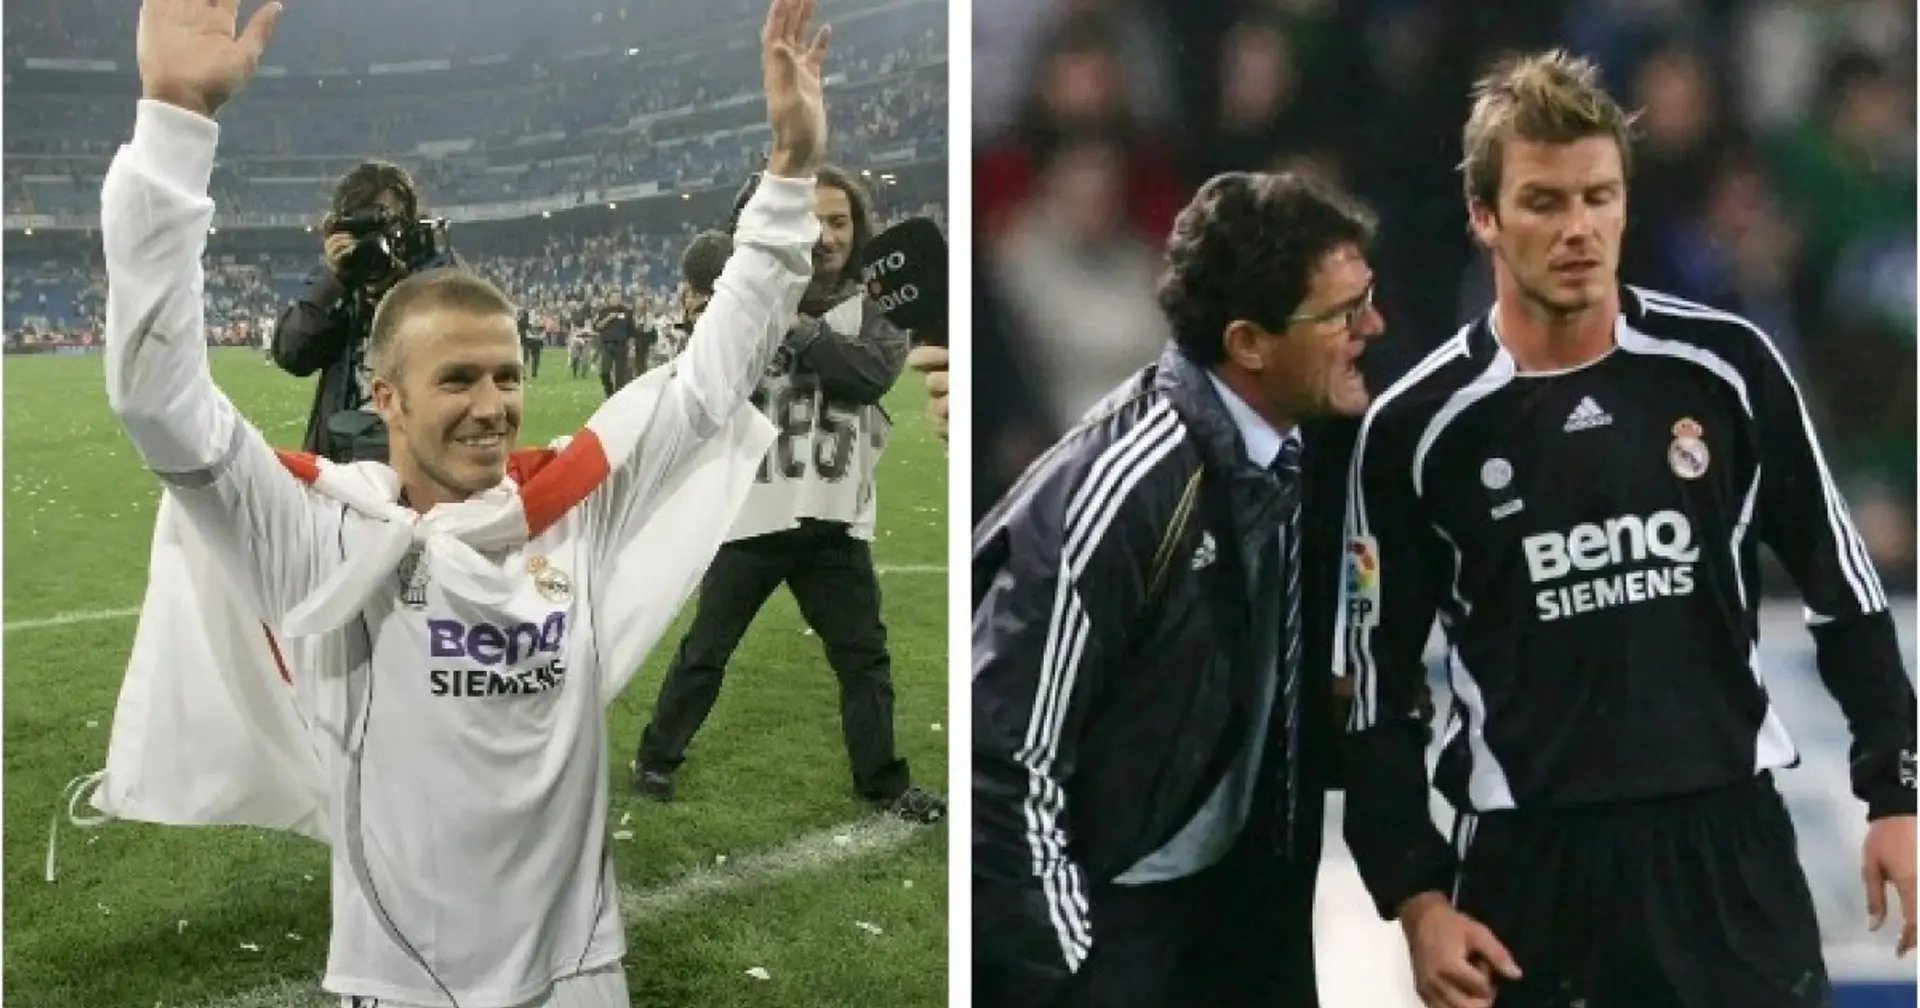 "Du wirst nie wieder für Real Madrid spielen": Fabio Capello beendete David Beckhams Karriere in Spanien auf harte Weise